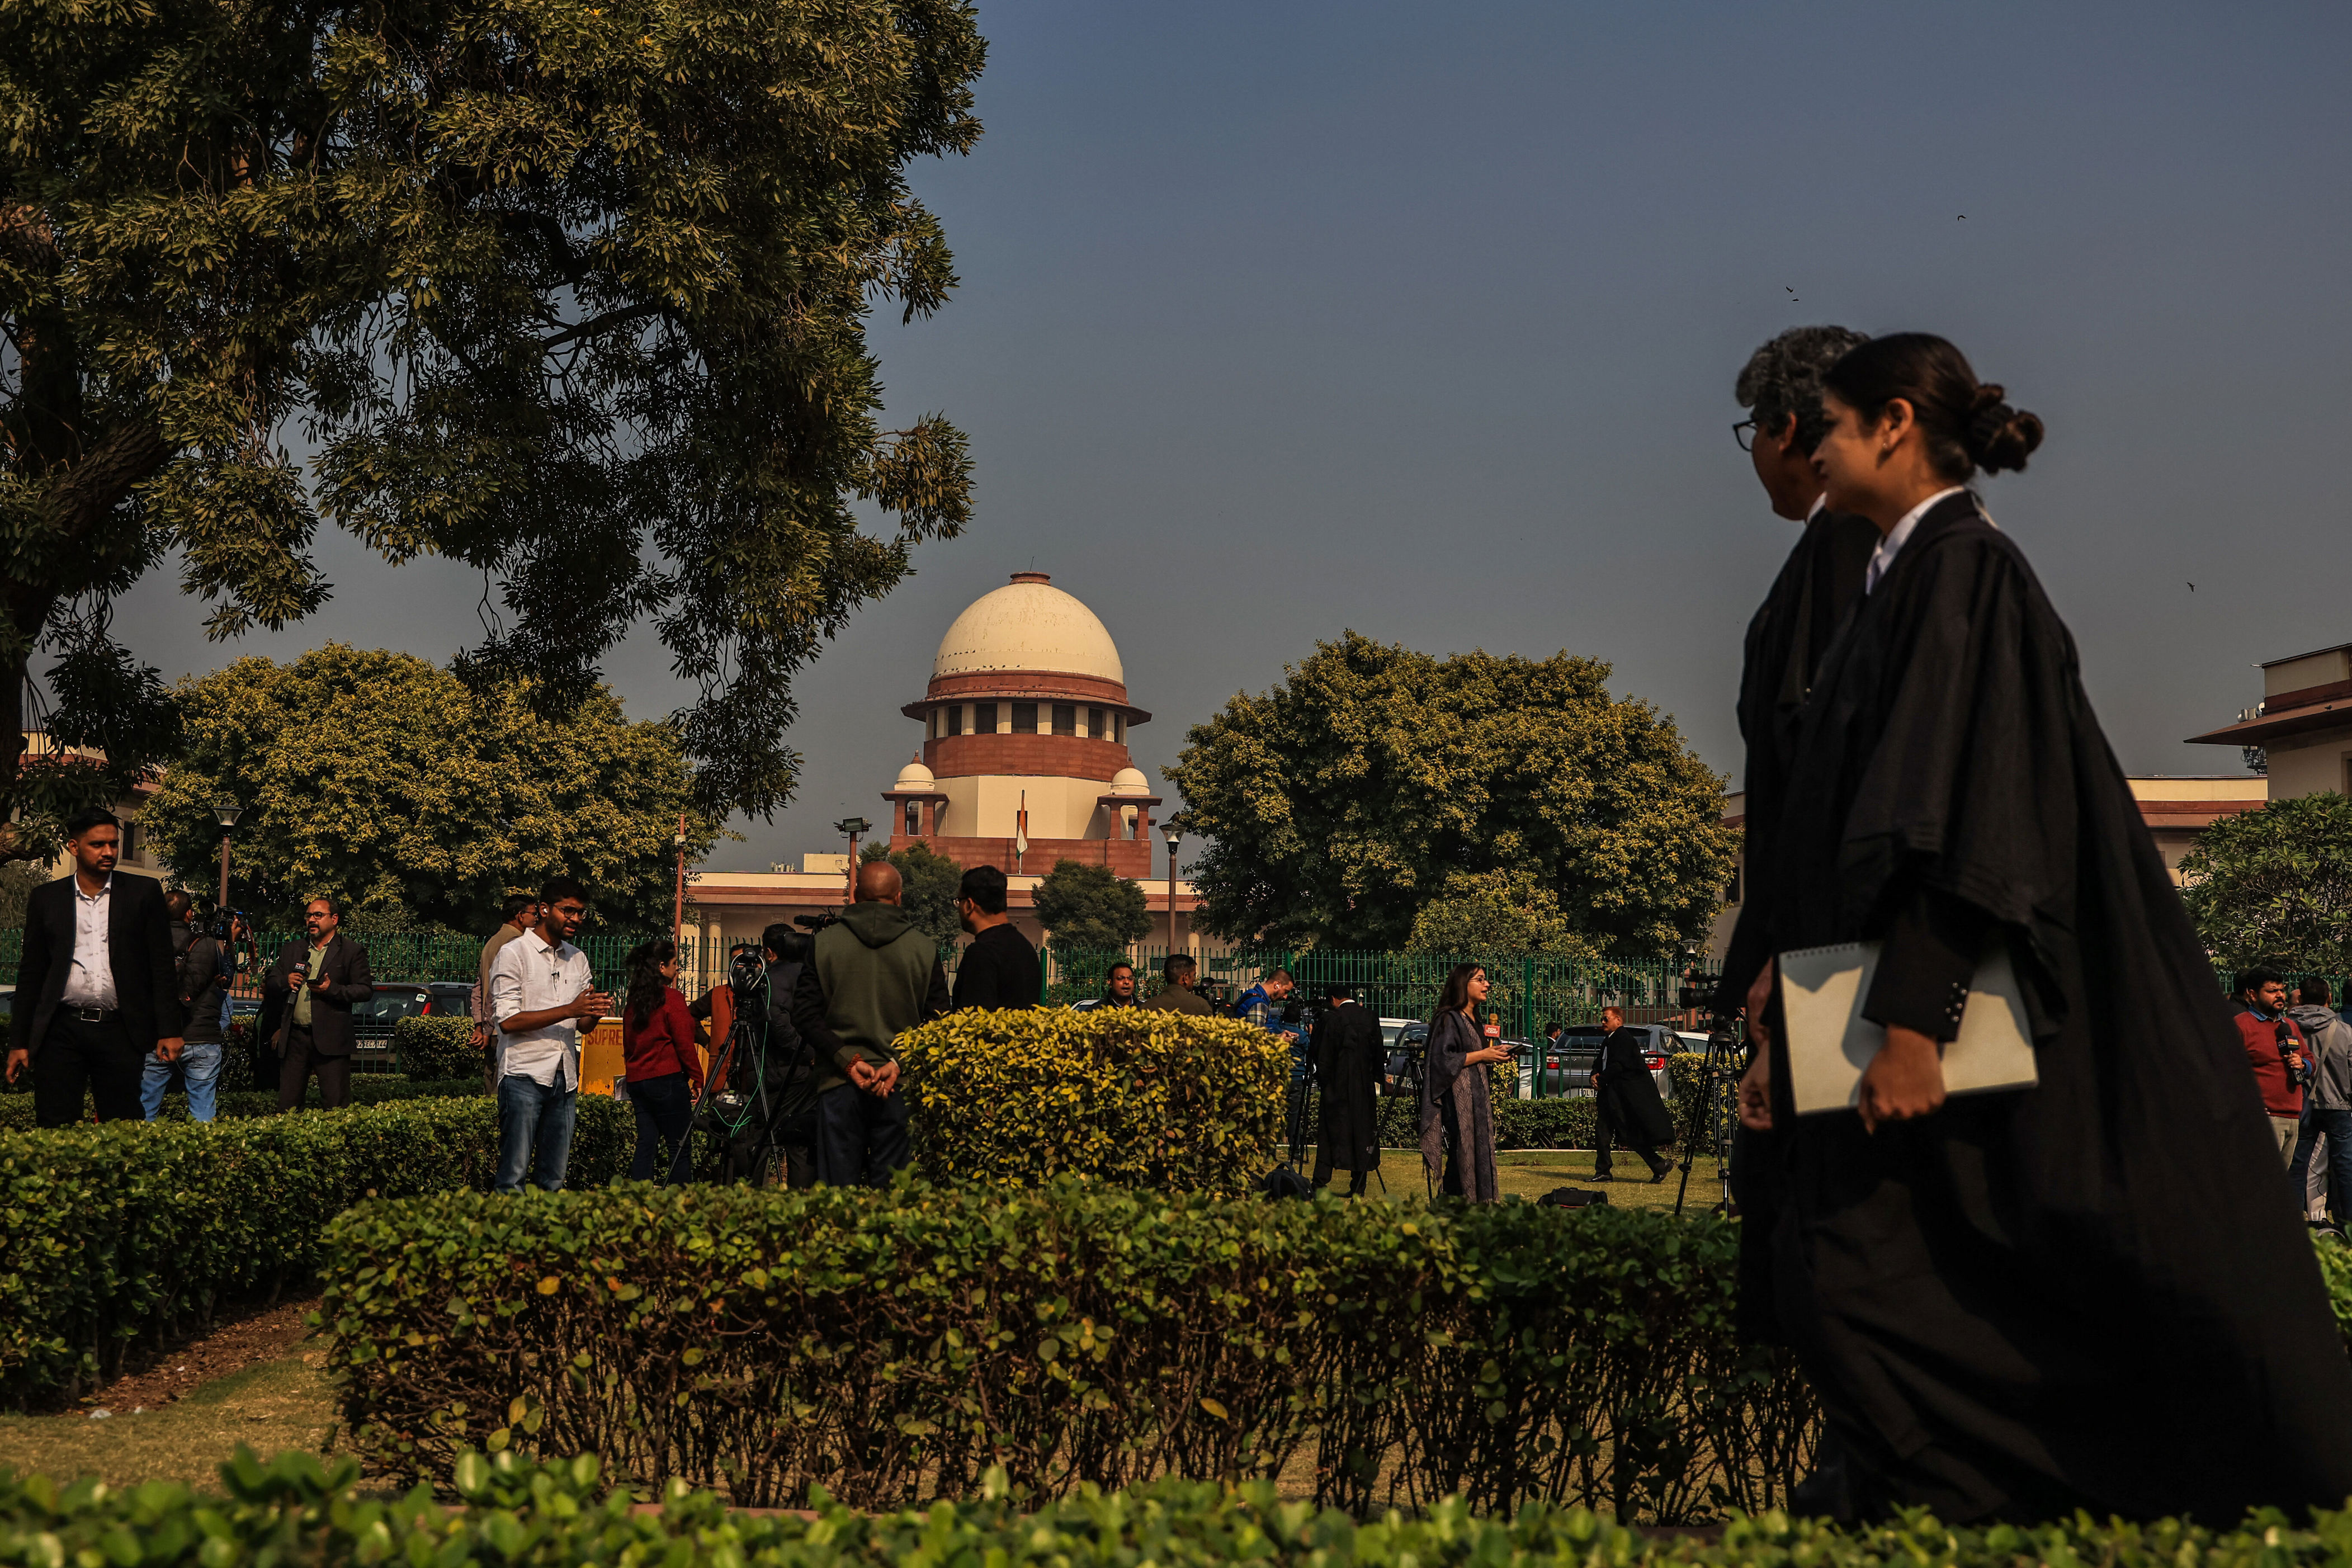 en inde, la cour suprême révolutionne le financement de la vie politique